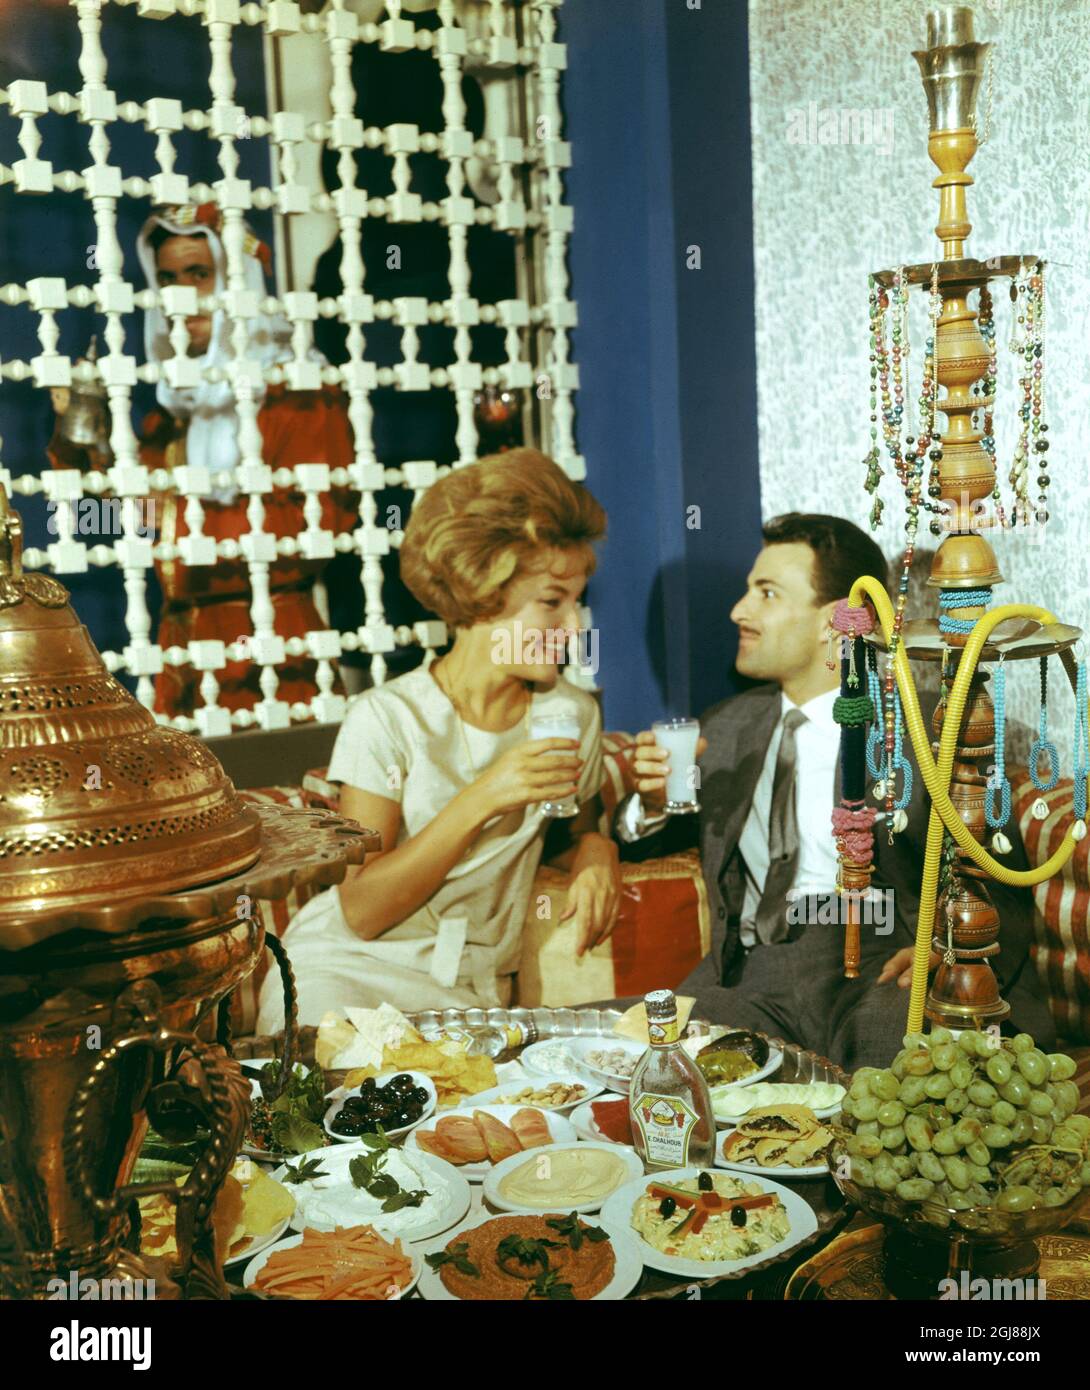 SIRIA Foto Data: 1960 -? -? LIME Una coppia si siede ad un tavolo che è  riempito di meze delicato bevendo l'arak mescolato con l'acqua all'inizio  degli anni 1960. Foto CA Peterson /